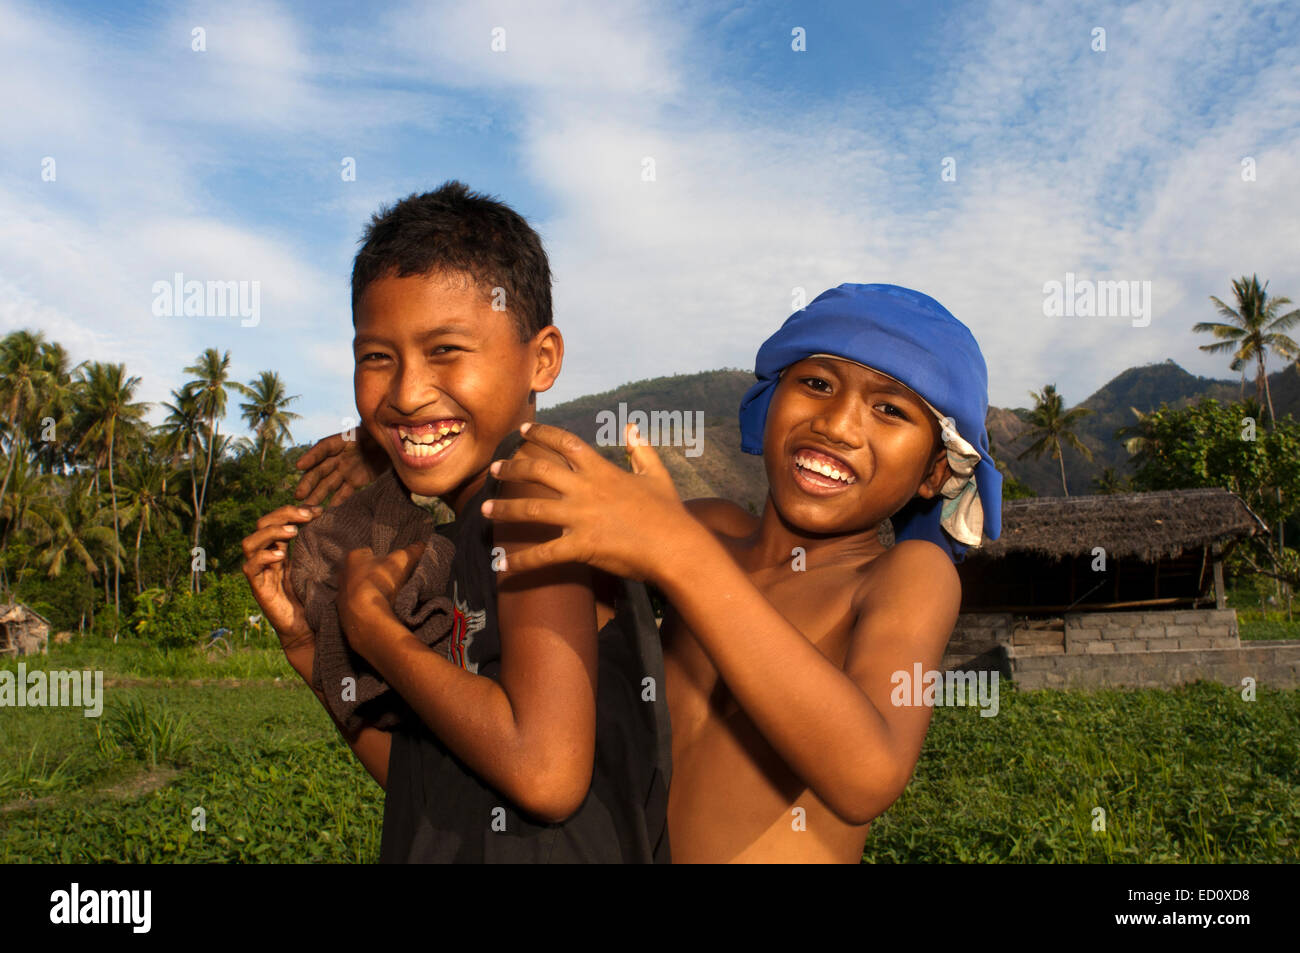 Zwei junge Leute, die Spaß in einem Feld in der Nähe von Dorf Amed Ost Bali Fischereikultur. Amed ist ein langer Küstenstreifen von fishi Stockfoto